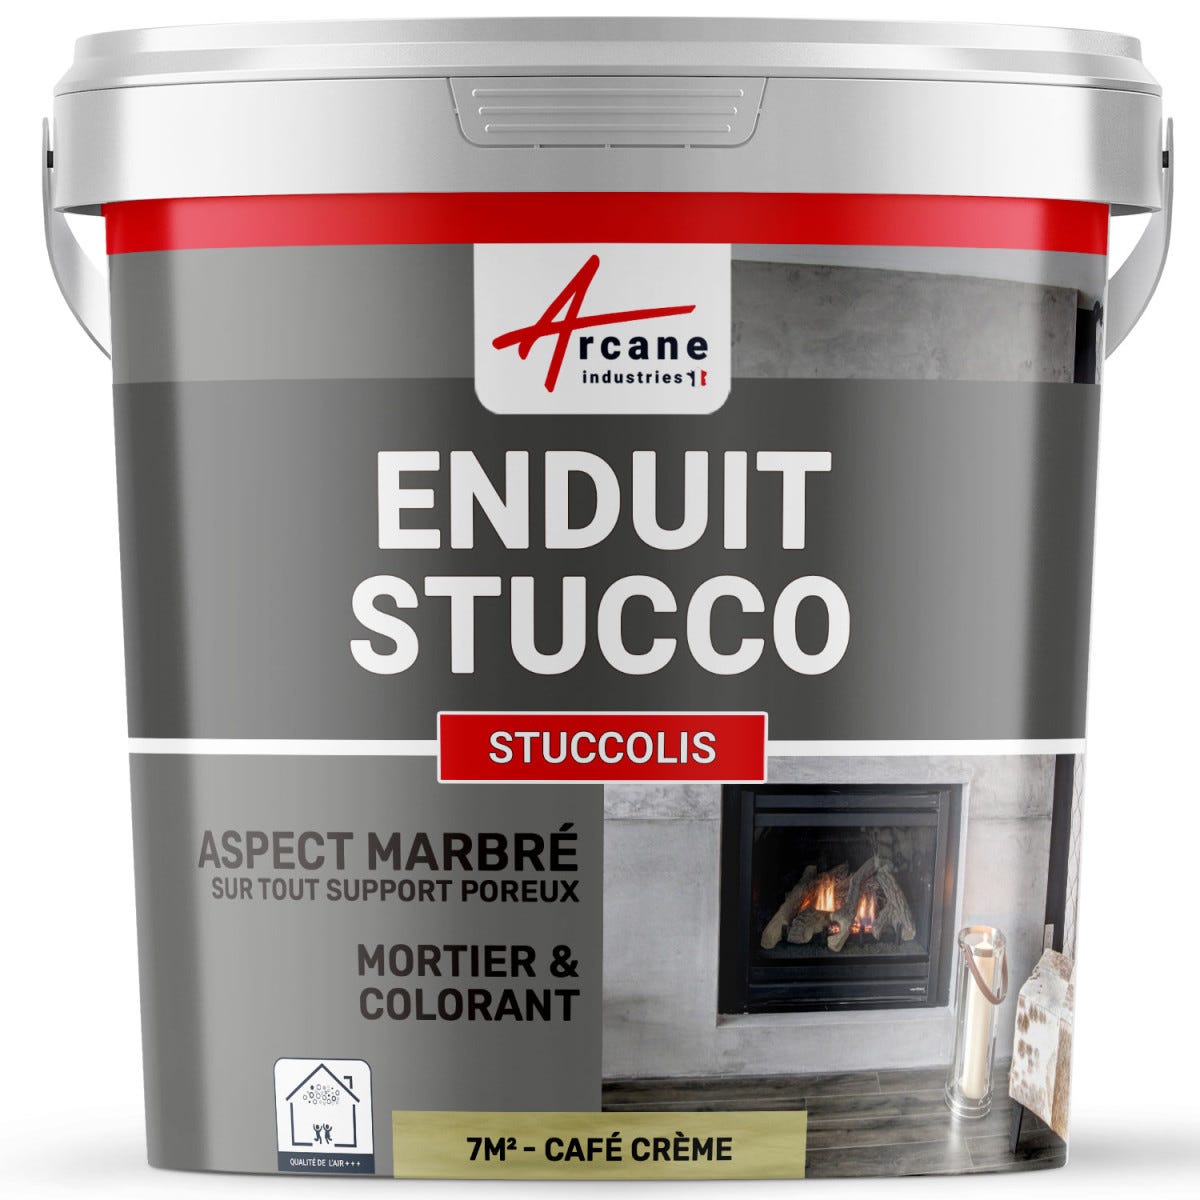 Mortier + teinte - stucco (sans primaire ni finition) - STUCCOLIS Mortier + teinte Cafe Creme - kit jusqu'à 7 m²ARCANE INDUSTRIES 0